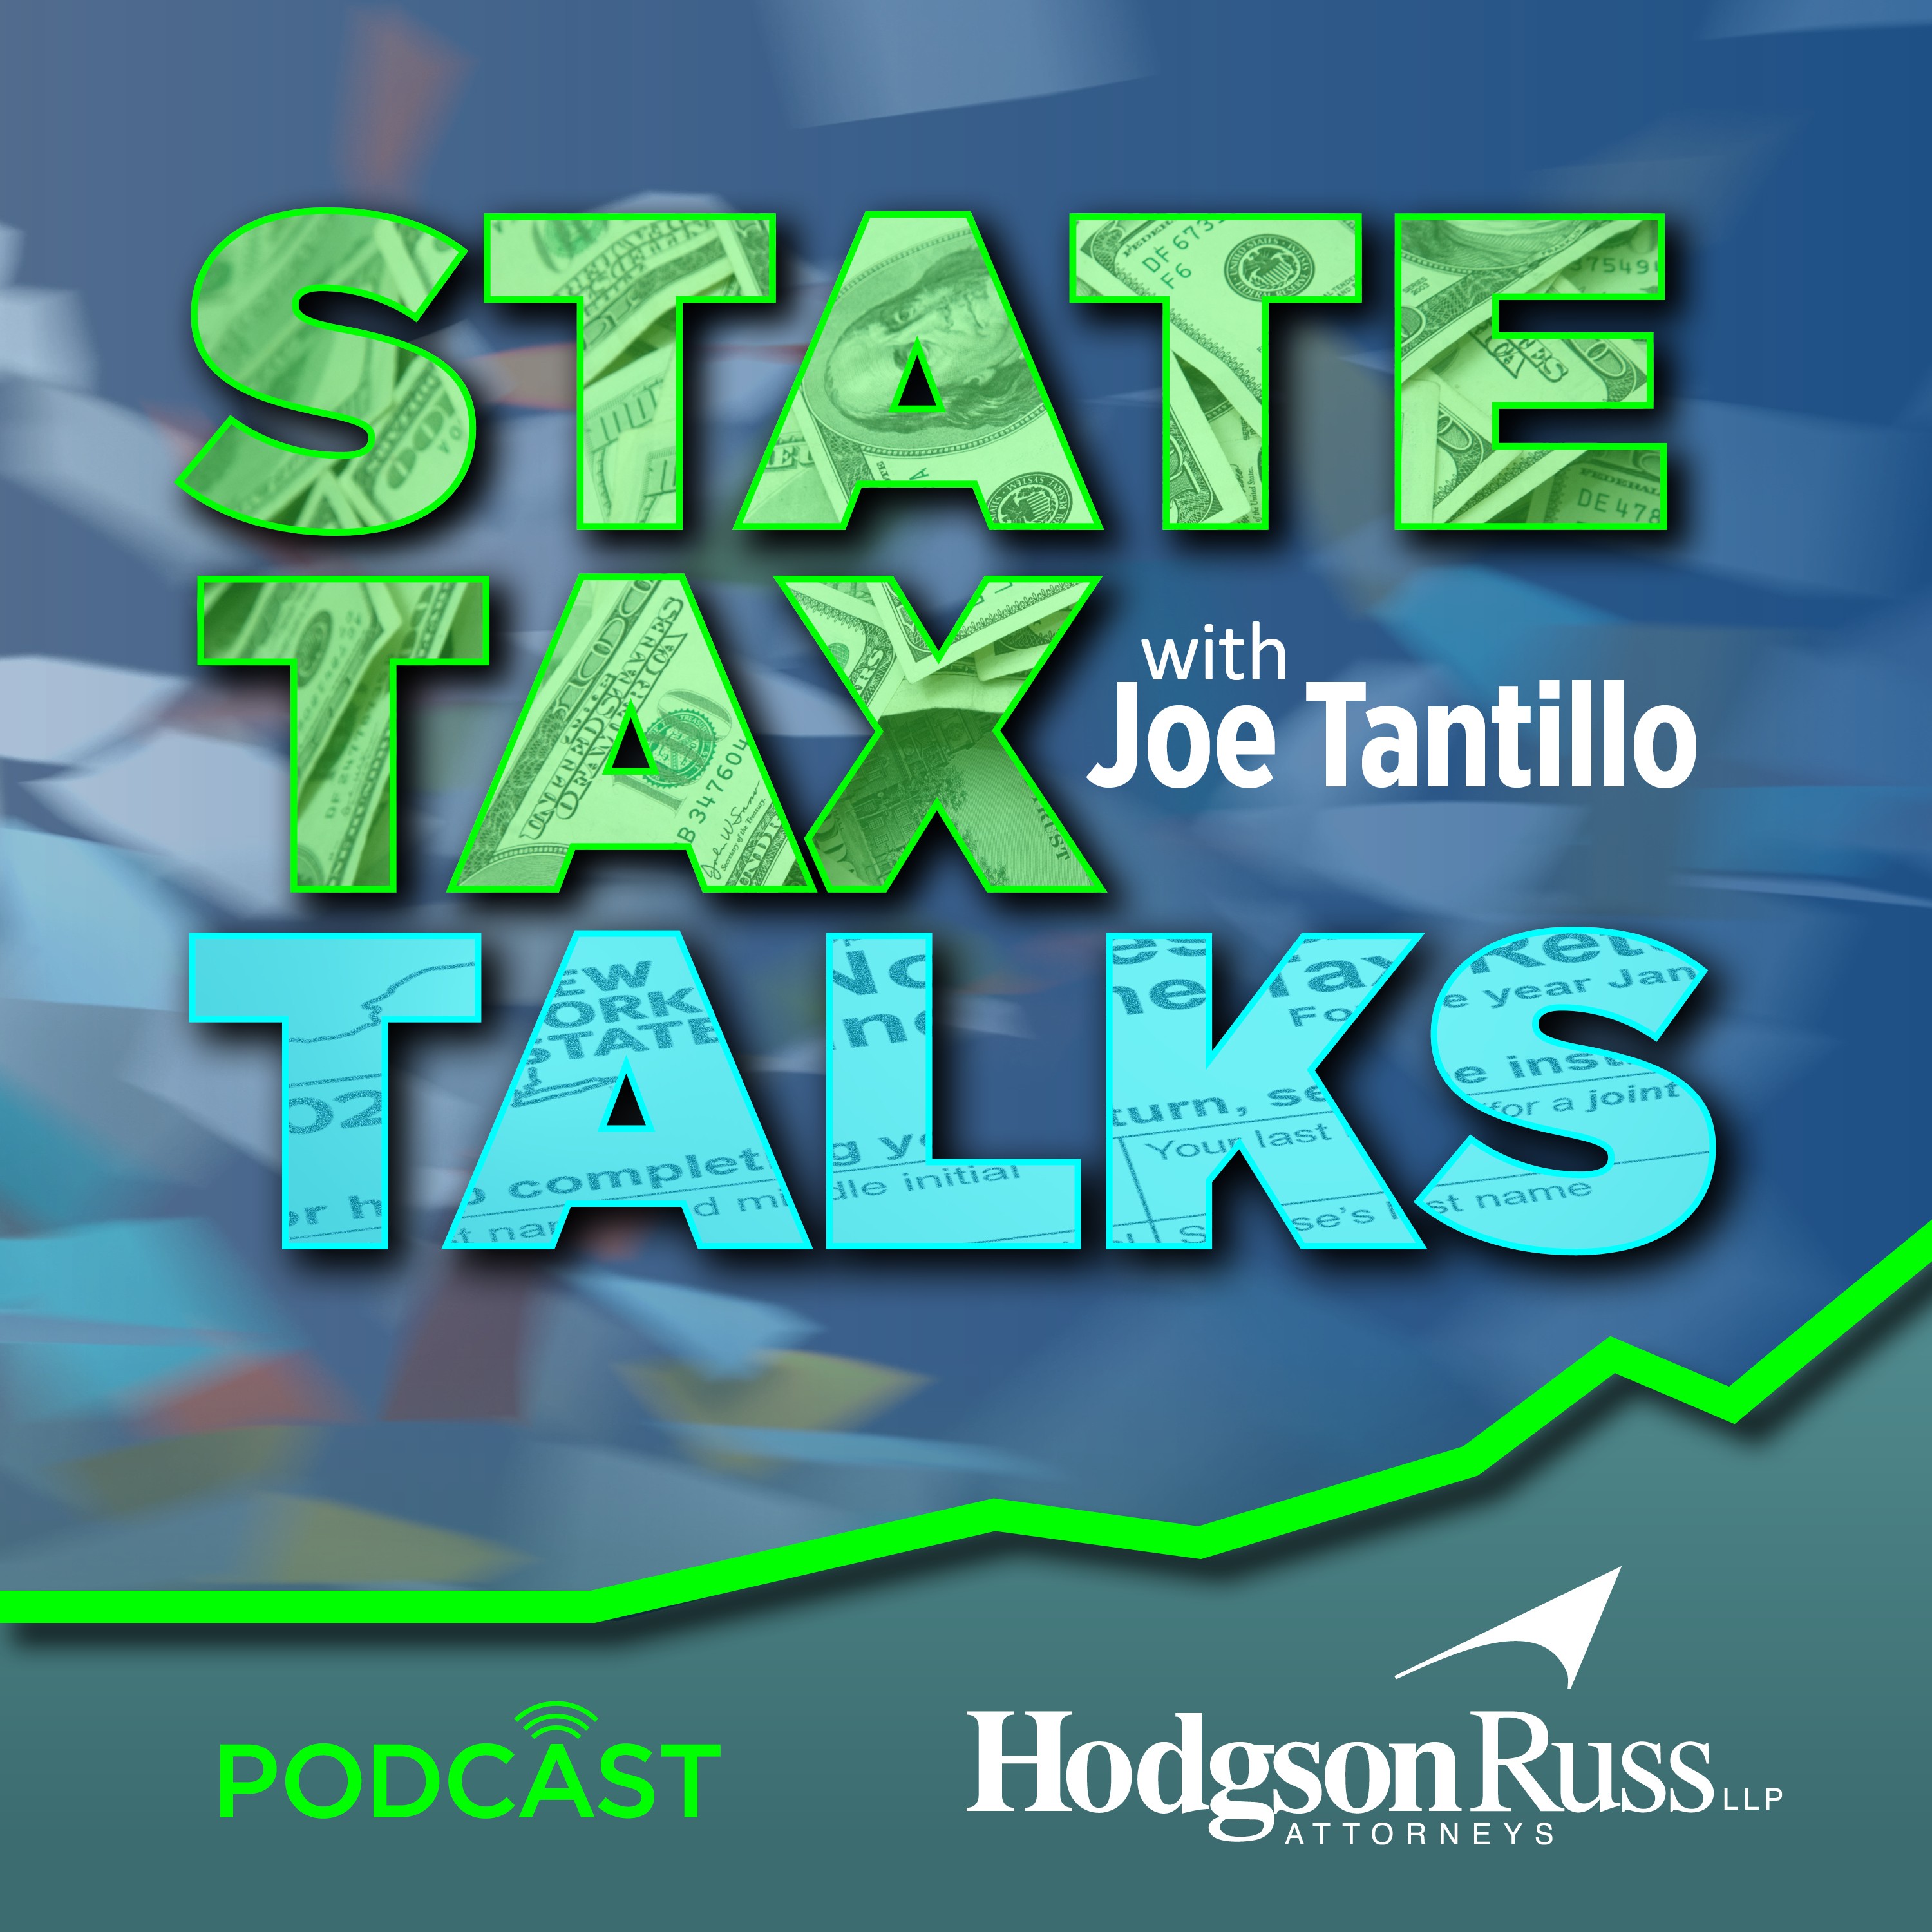 State Tax Talks with Joe Tantillo